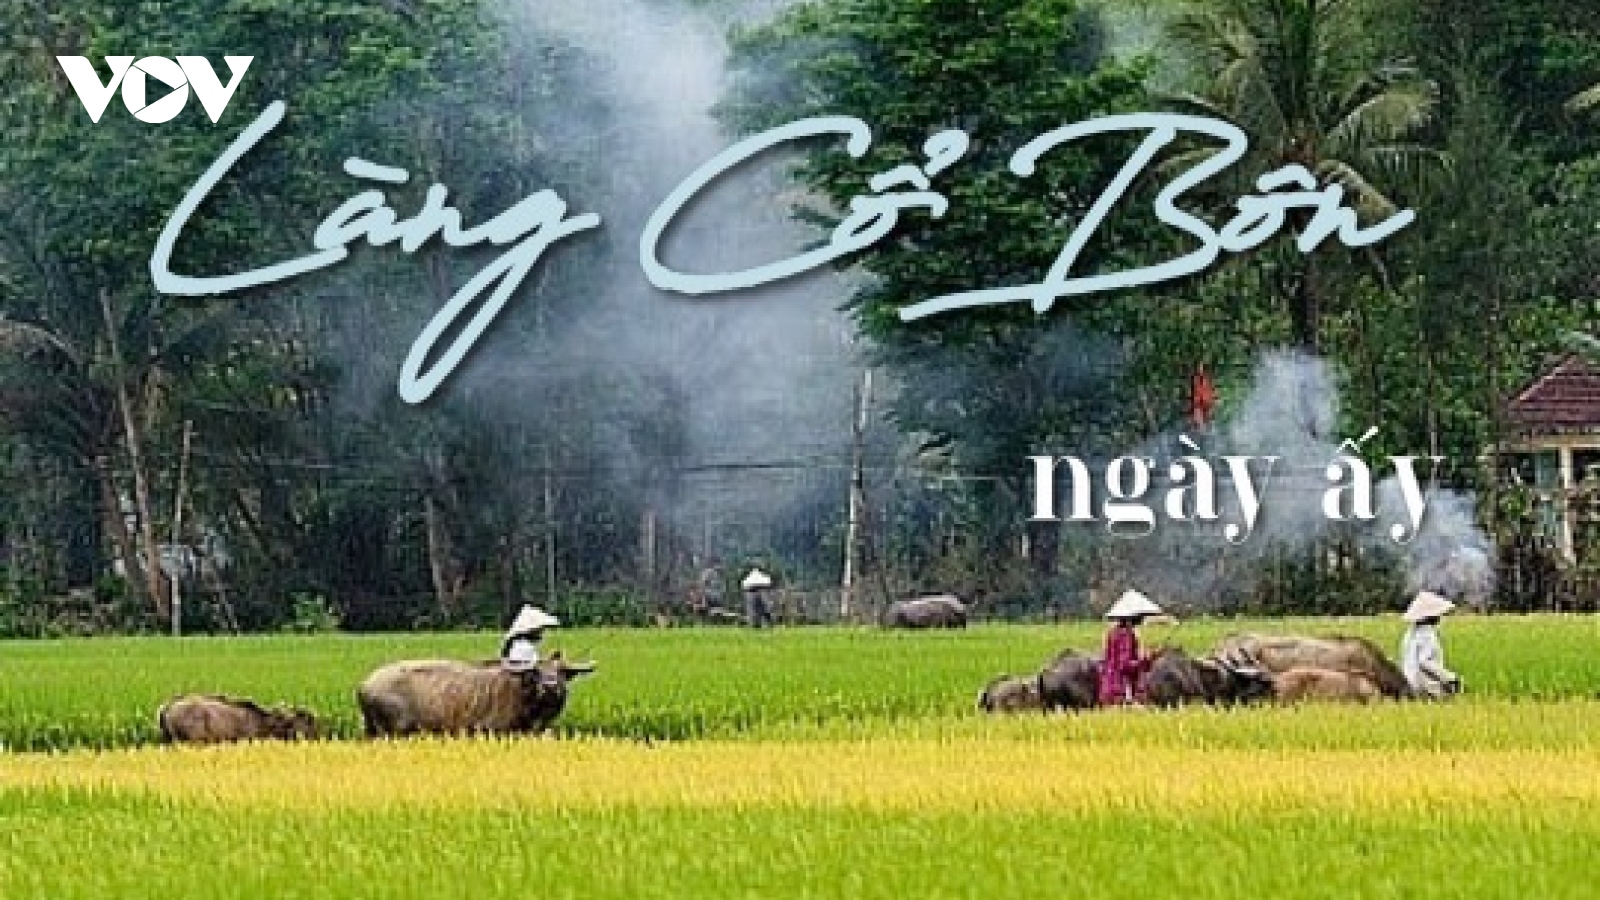 Truyện ngắn "Làng Cổ Bôn ngày ấy" - Vẻ đẹp của làng quê Việt